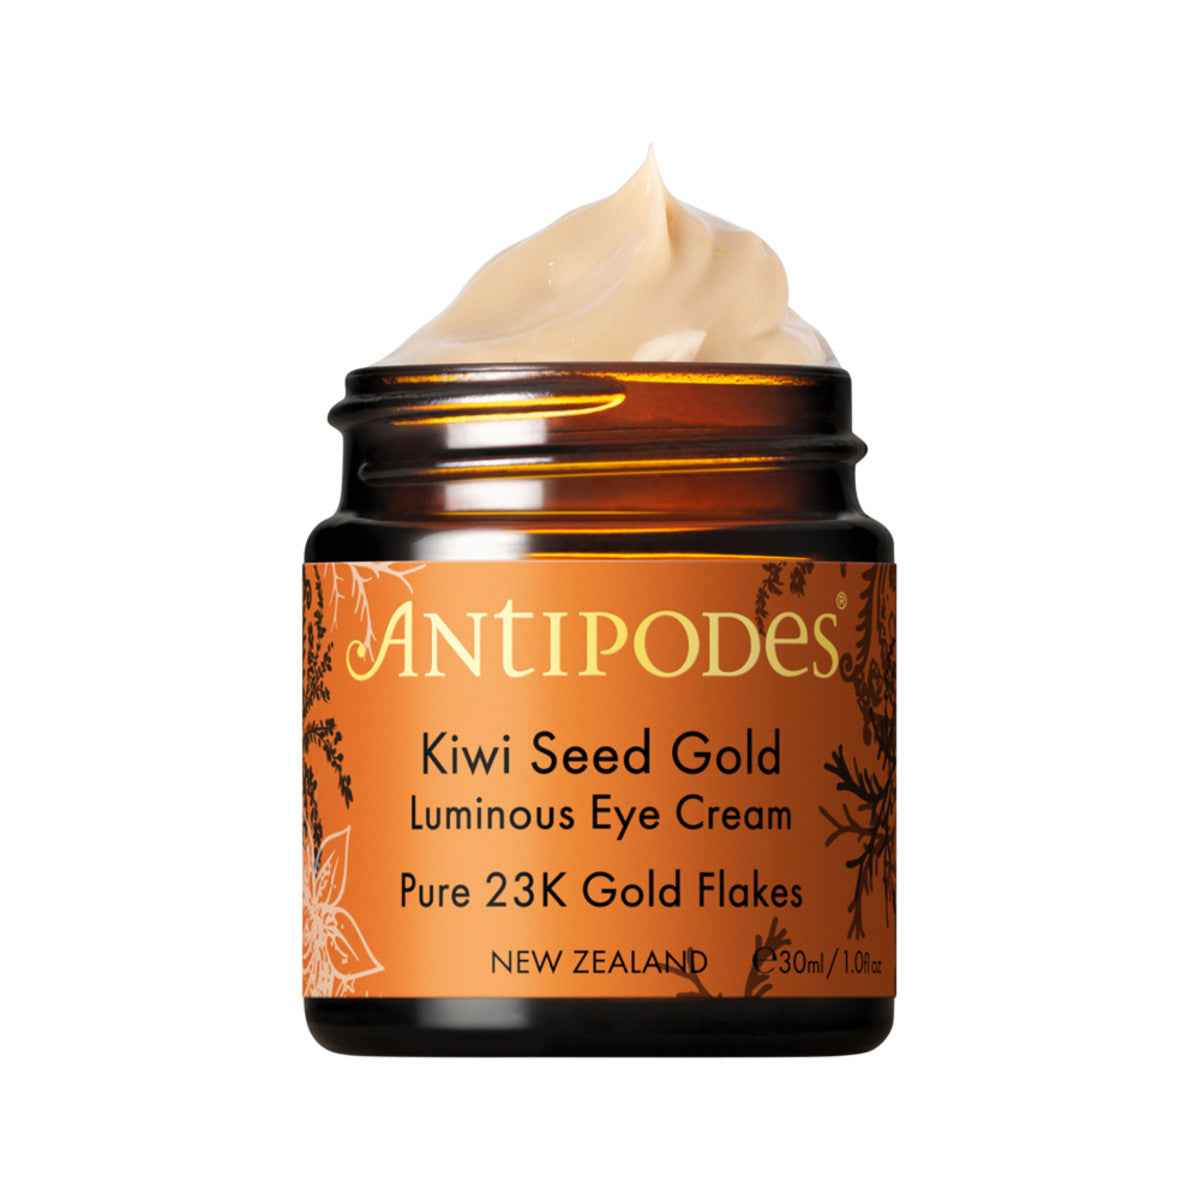 Antipodes - Eye Cream Kiwi Seed Gold Luminous